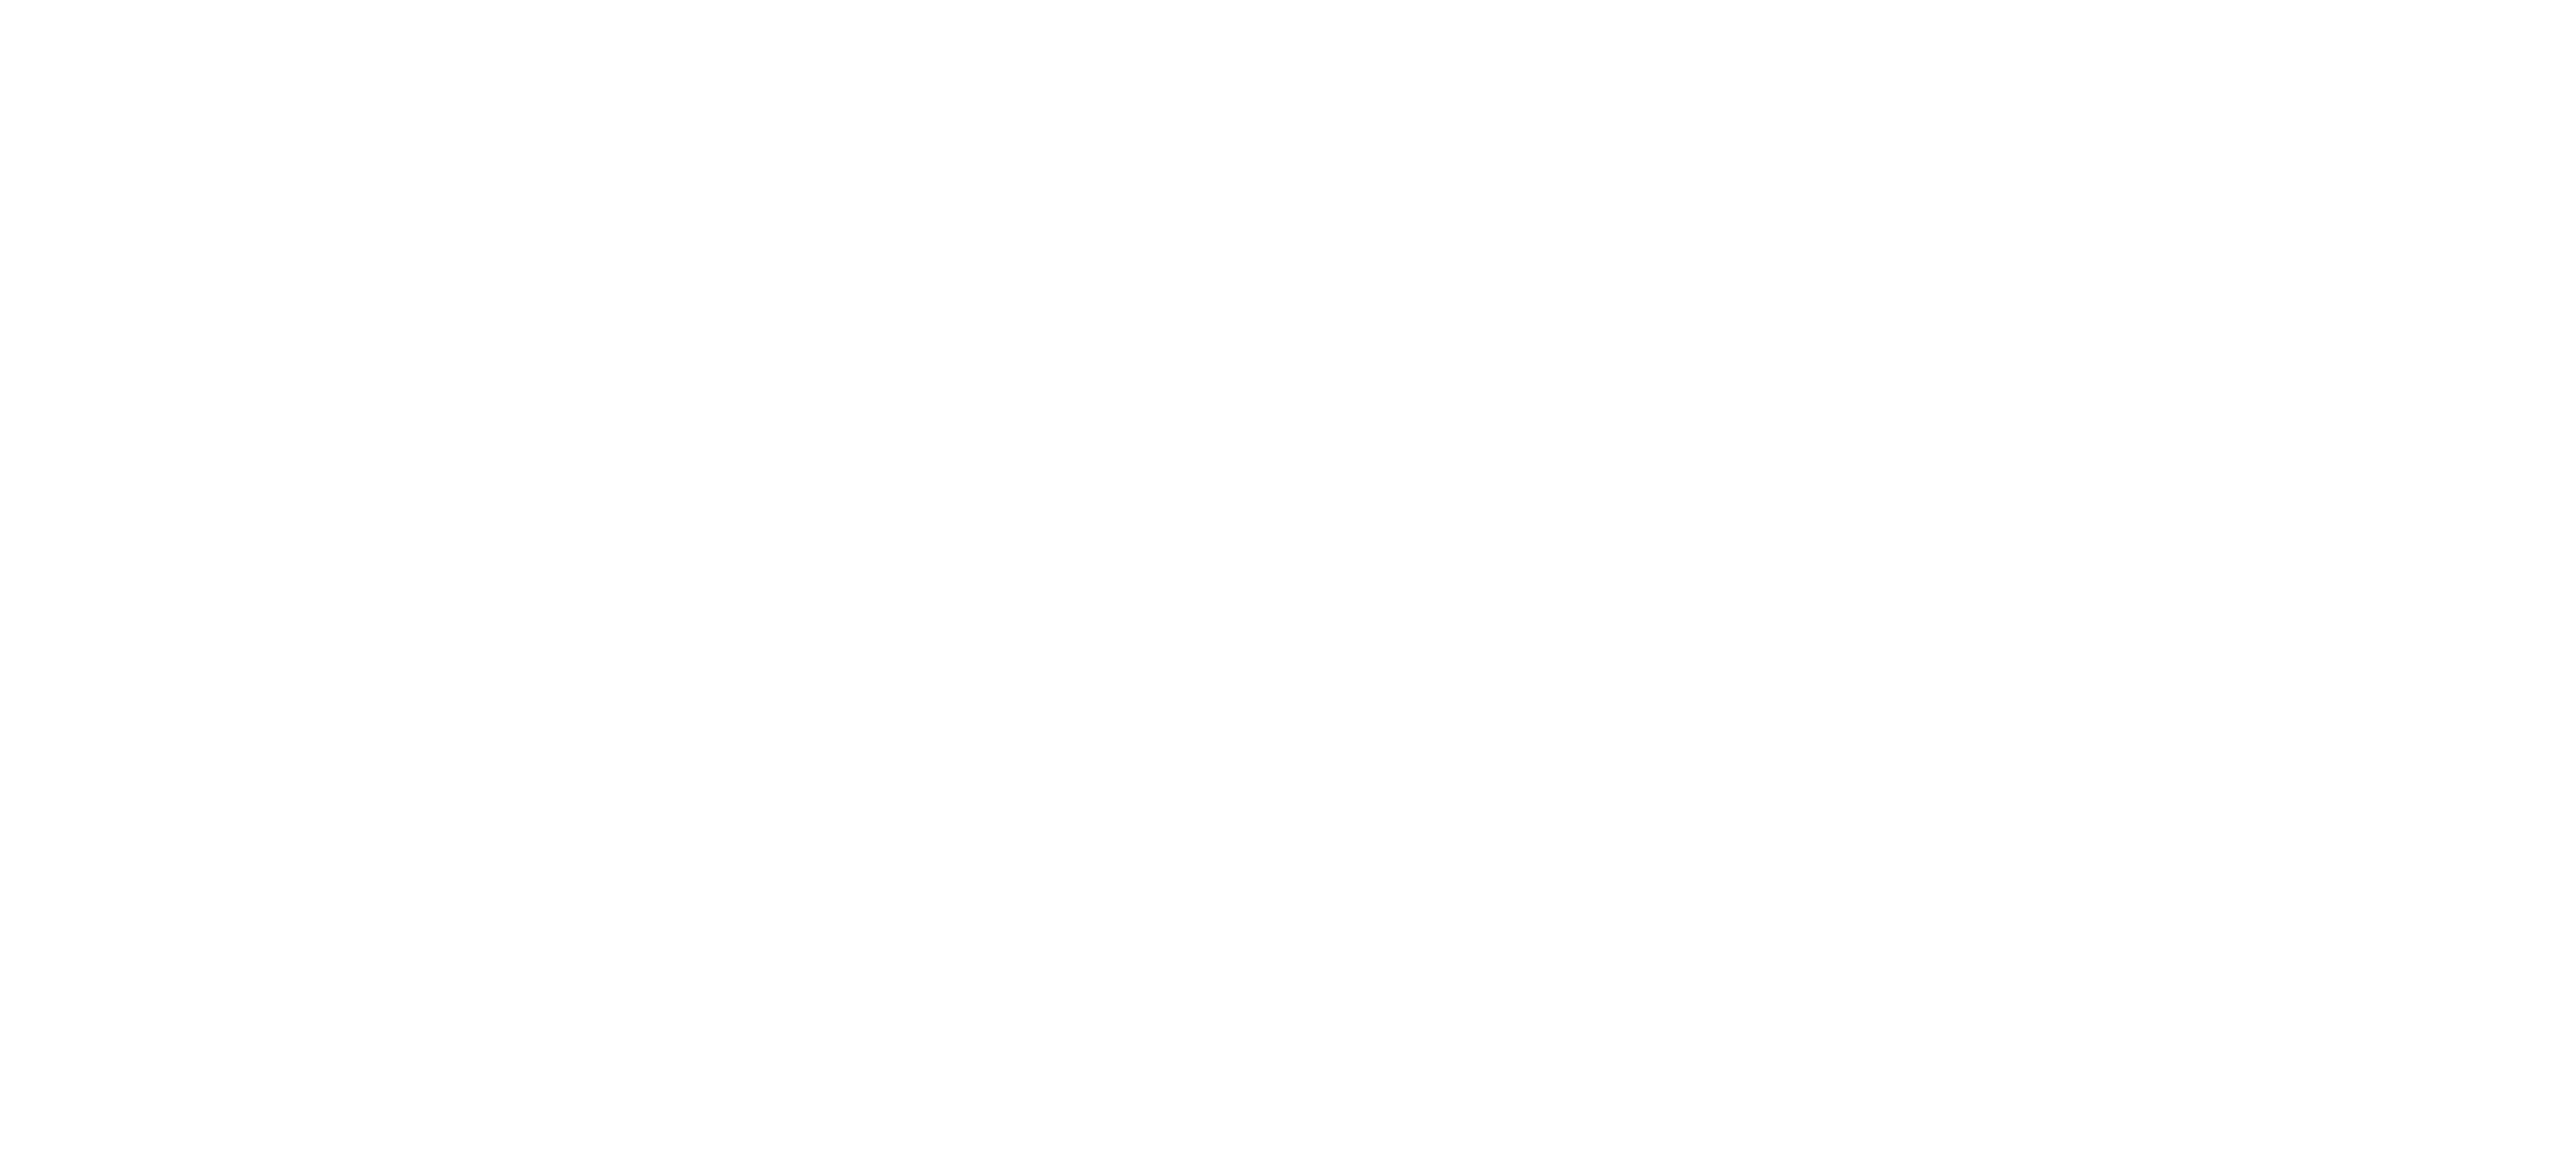 BJ charter